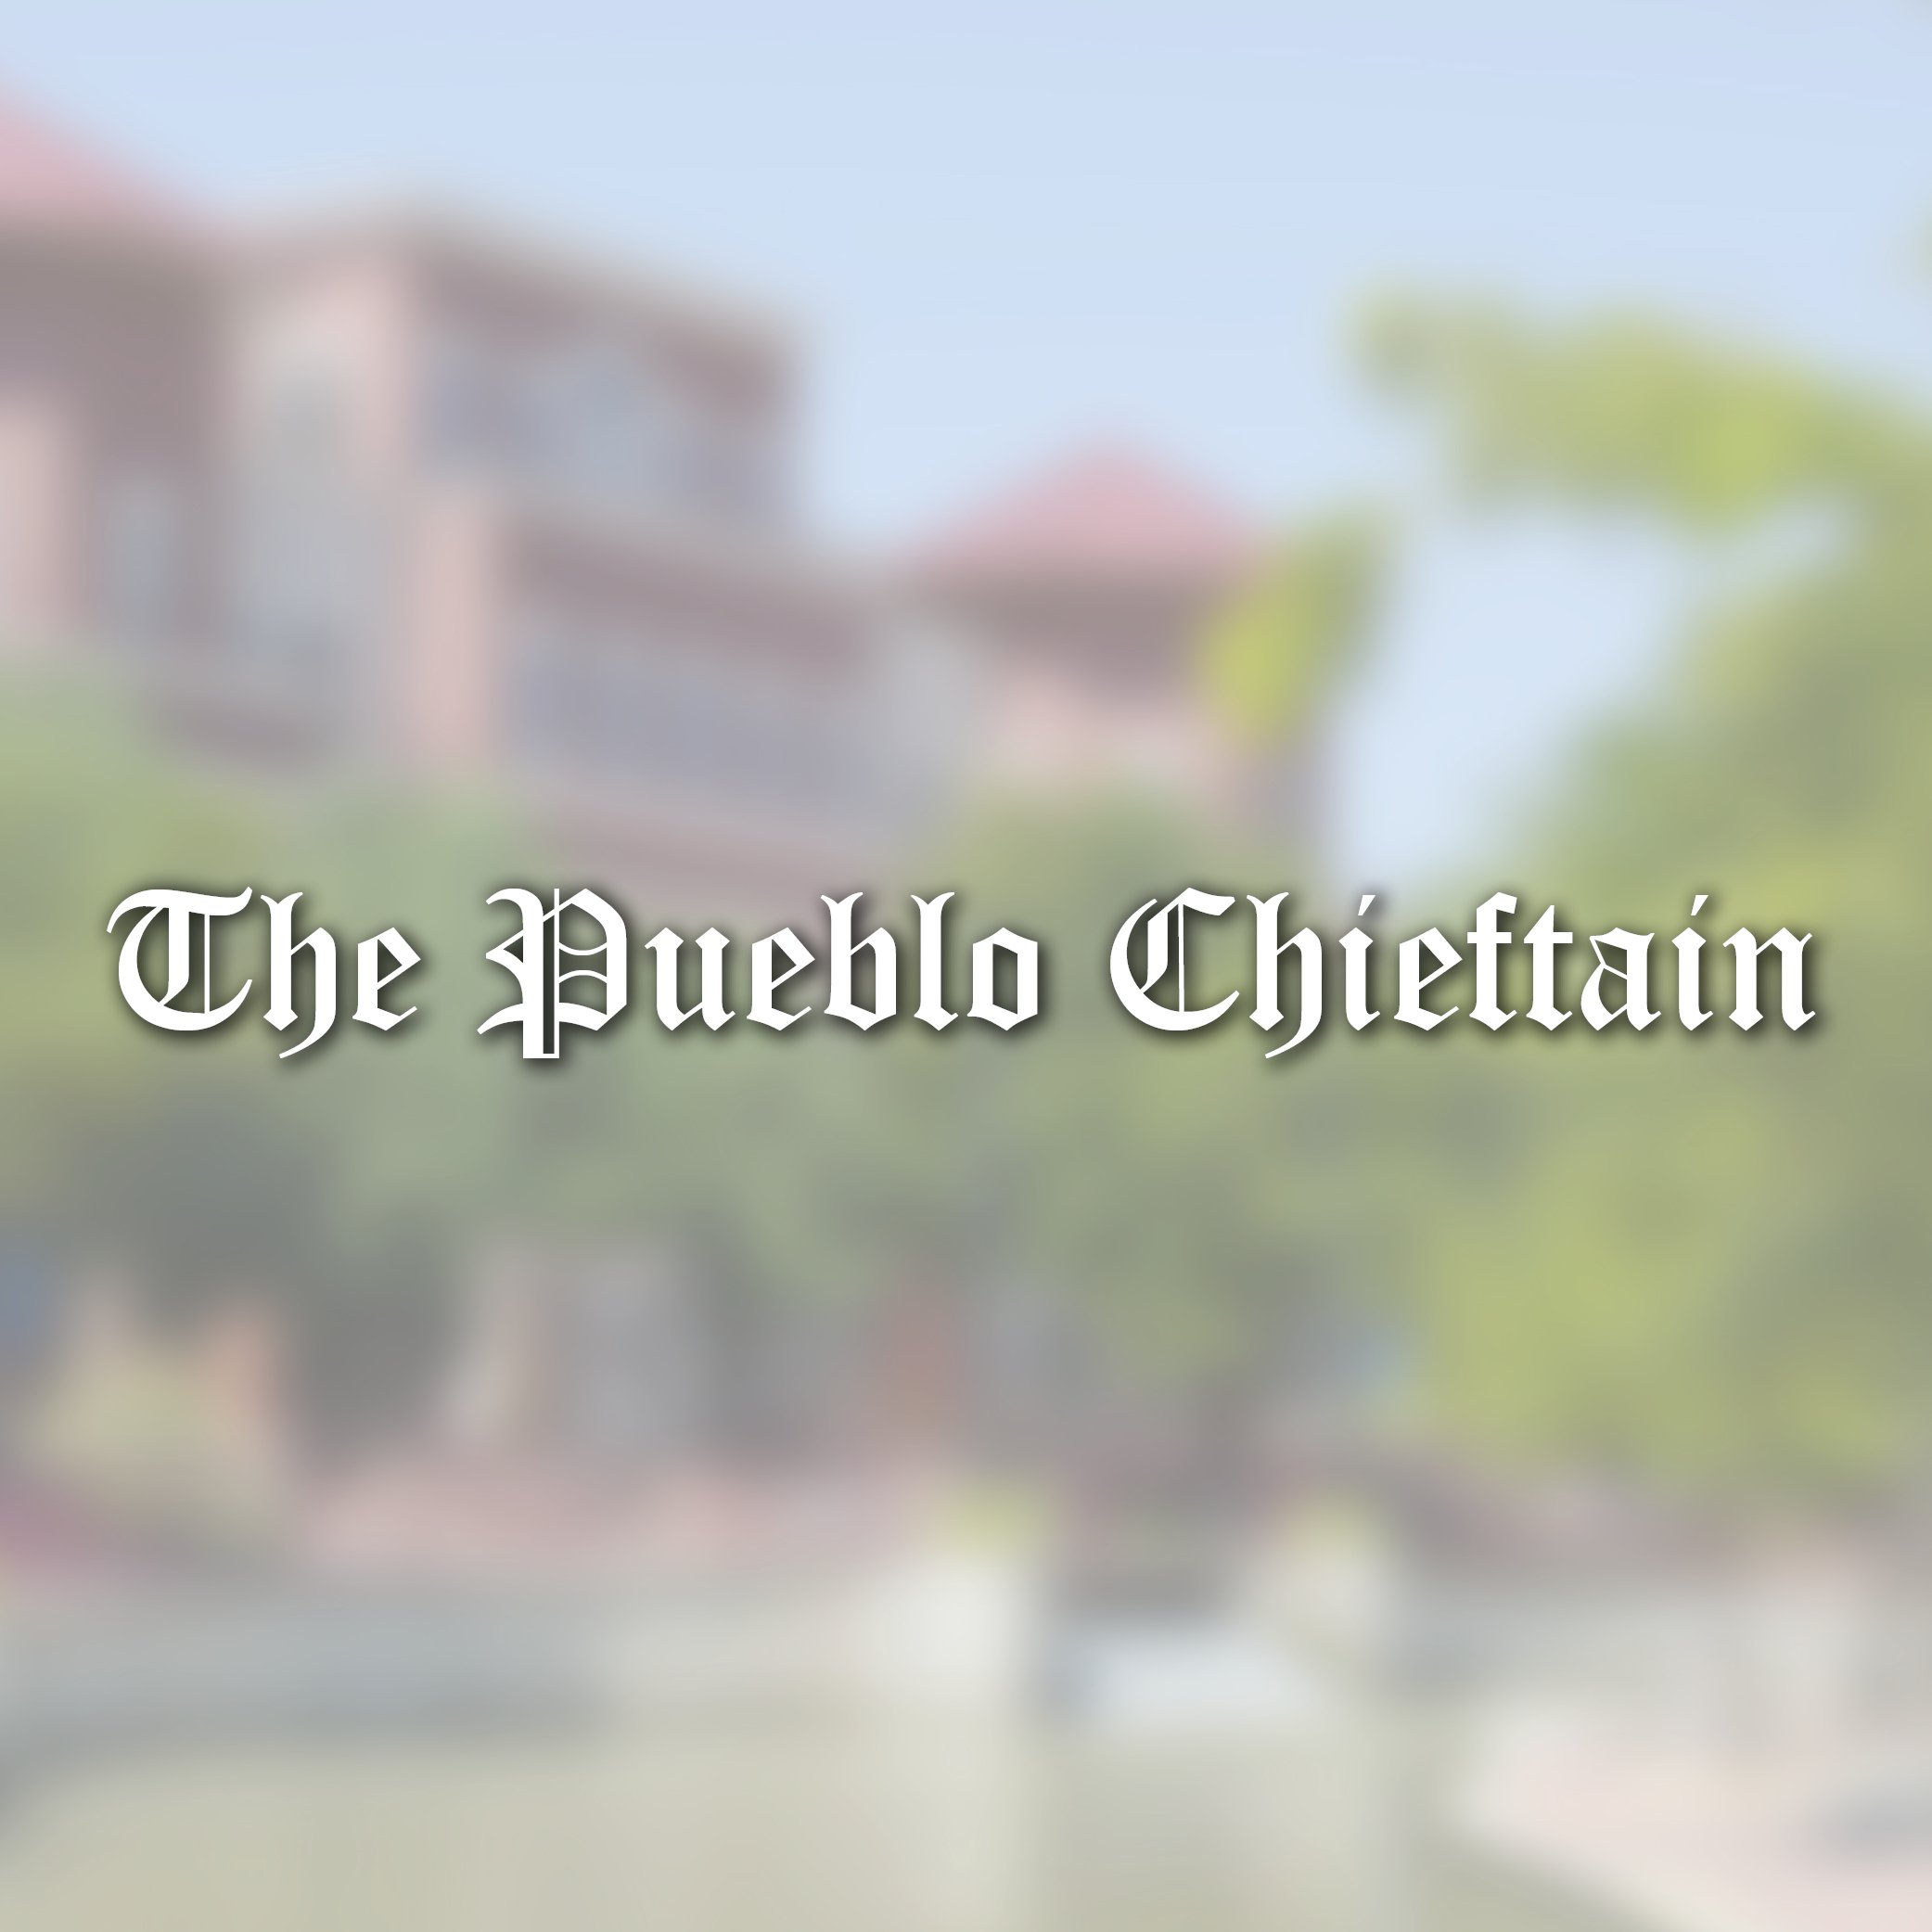 Pueblo Chieftan